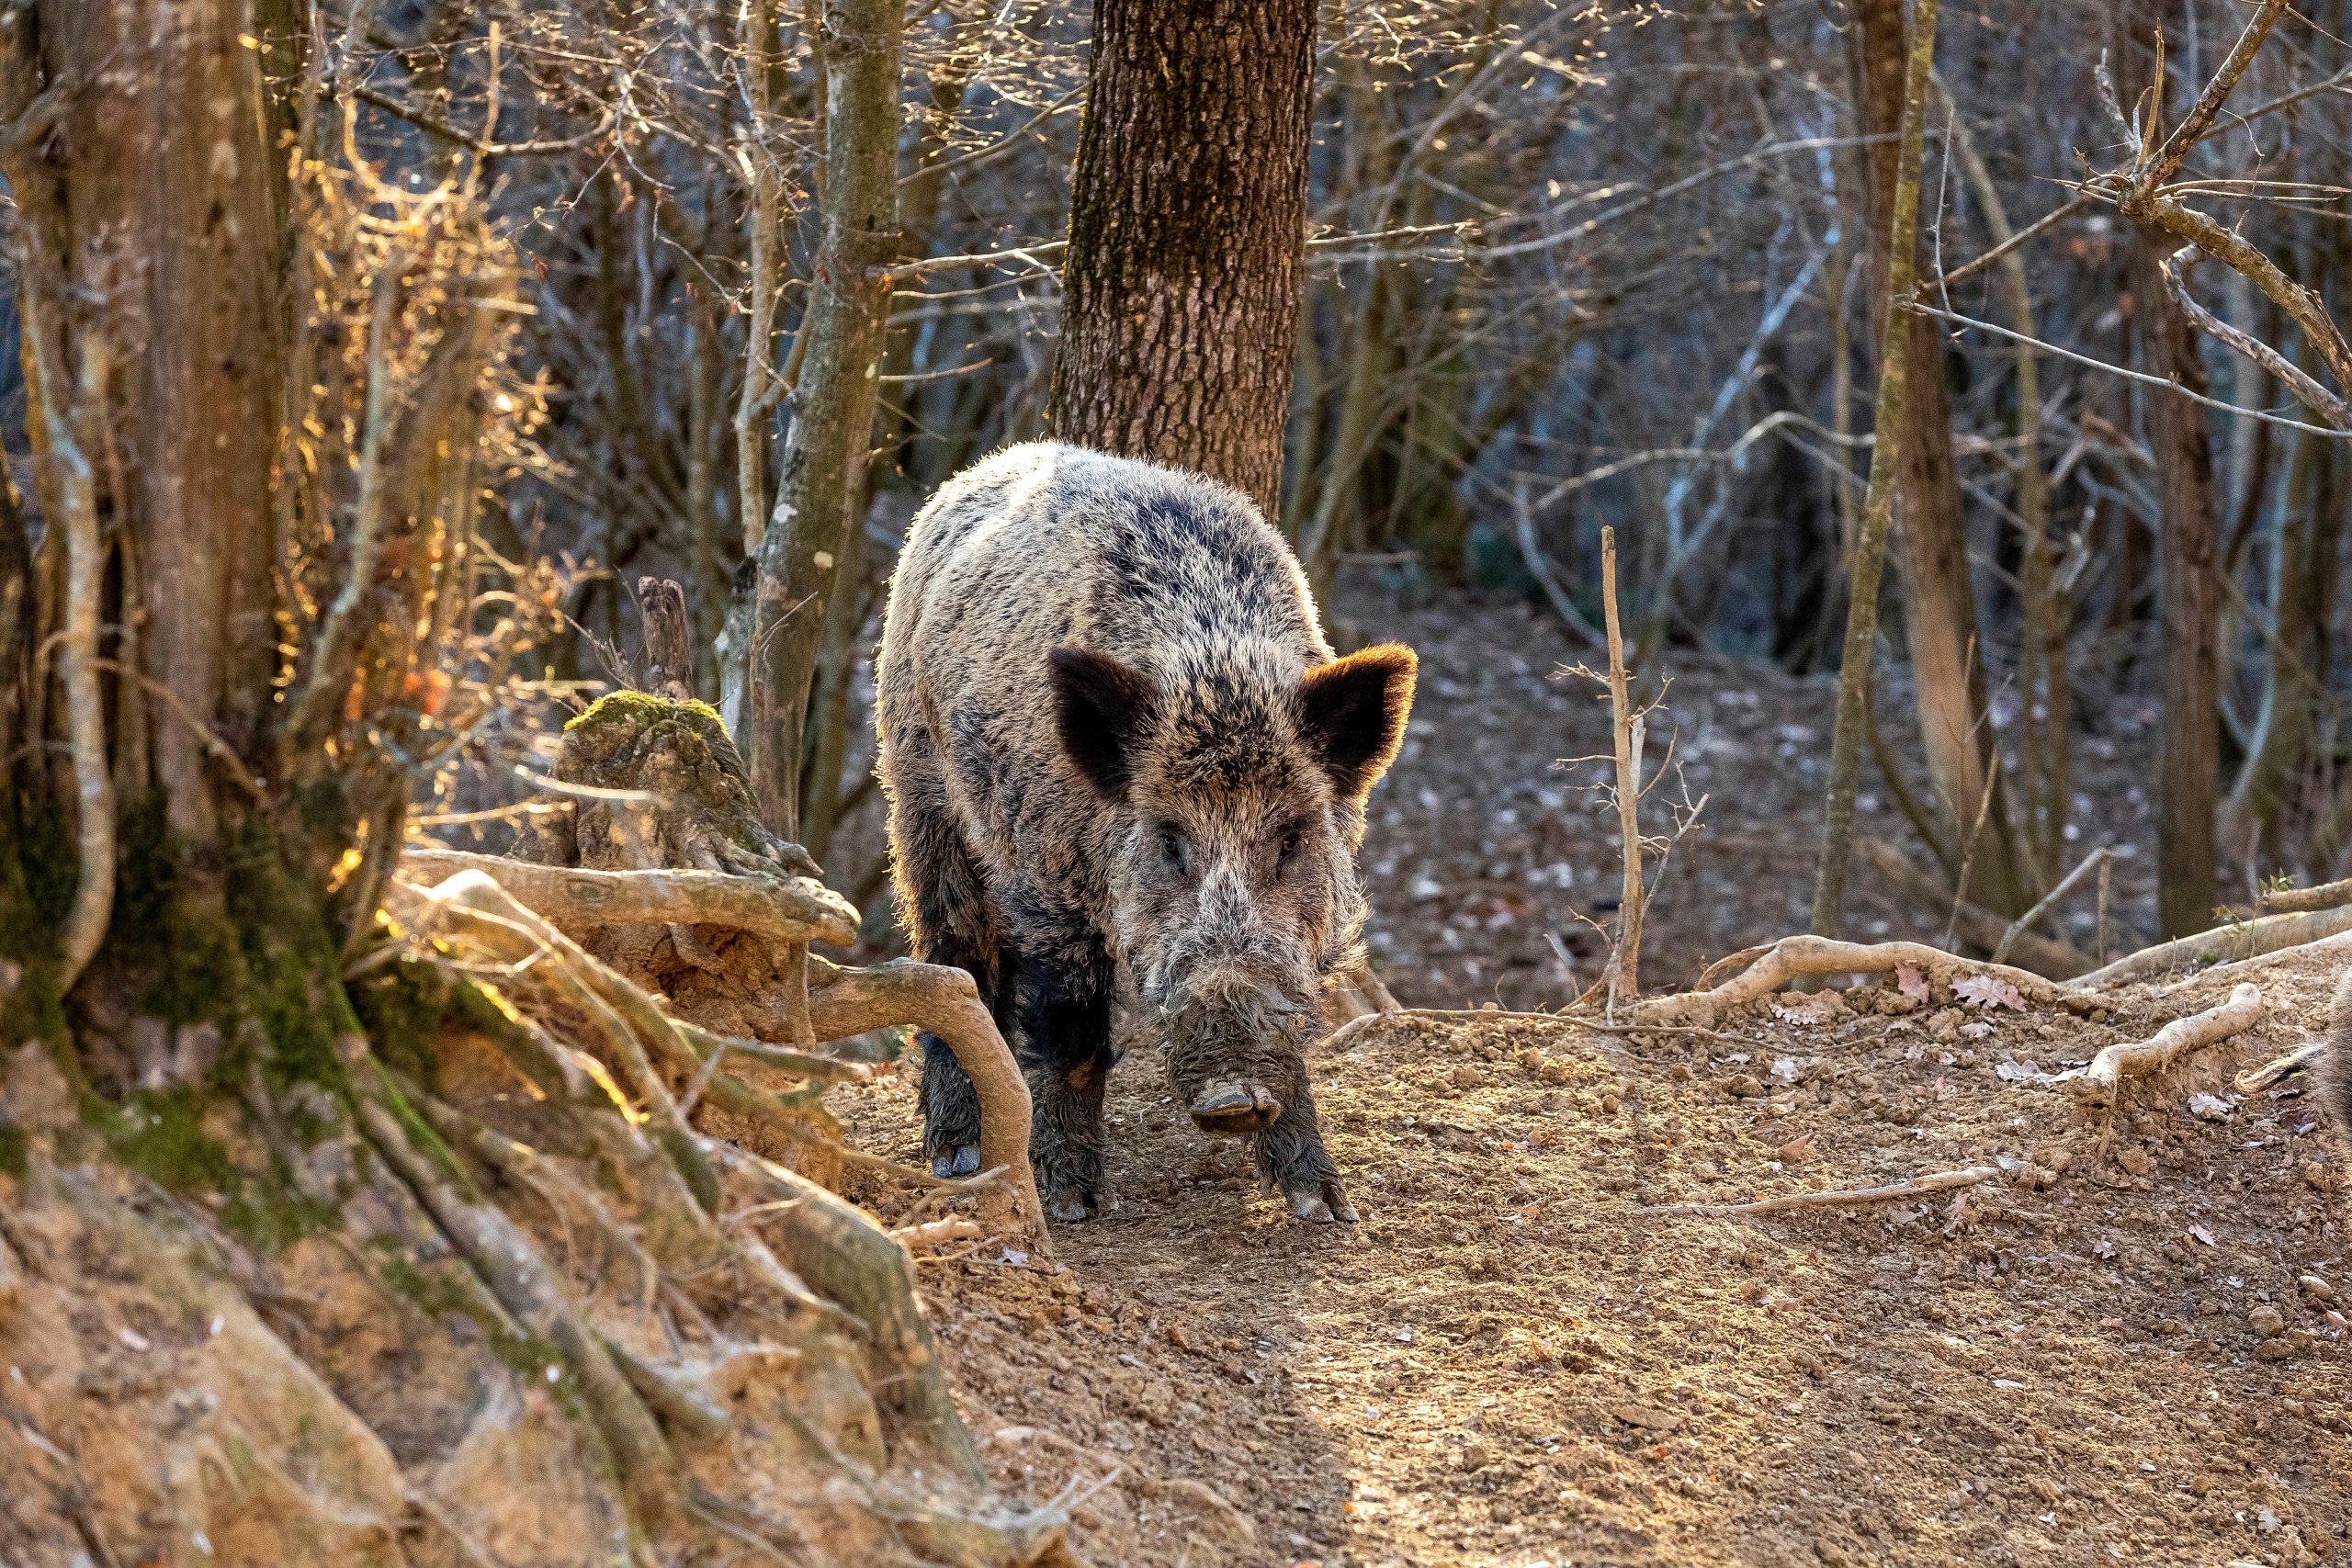 08.02.2022.., Buzet-
Divlje svinje u potrazi za hranom u sumi. Photo: Srecko Niketic/PIXSELL